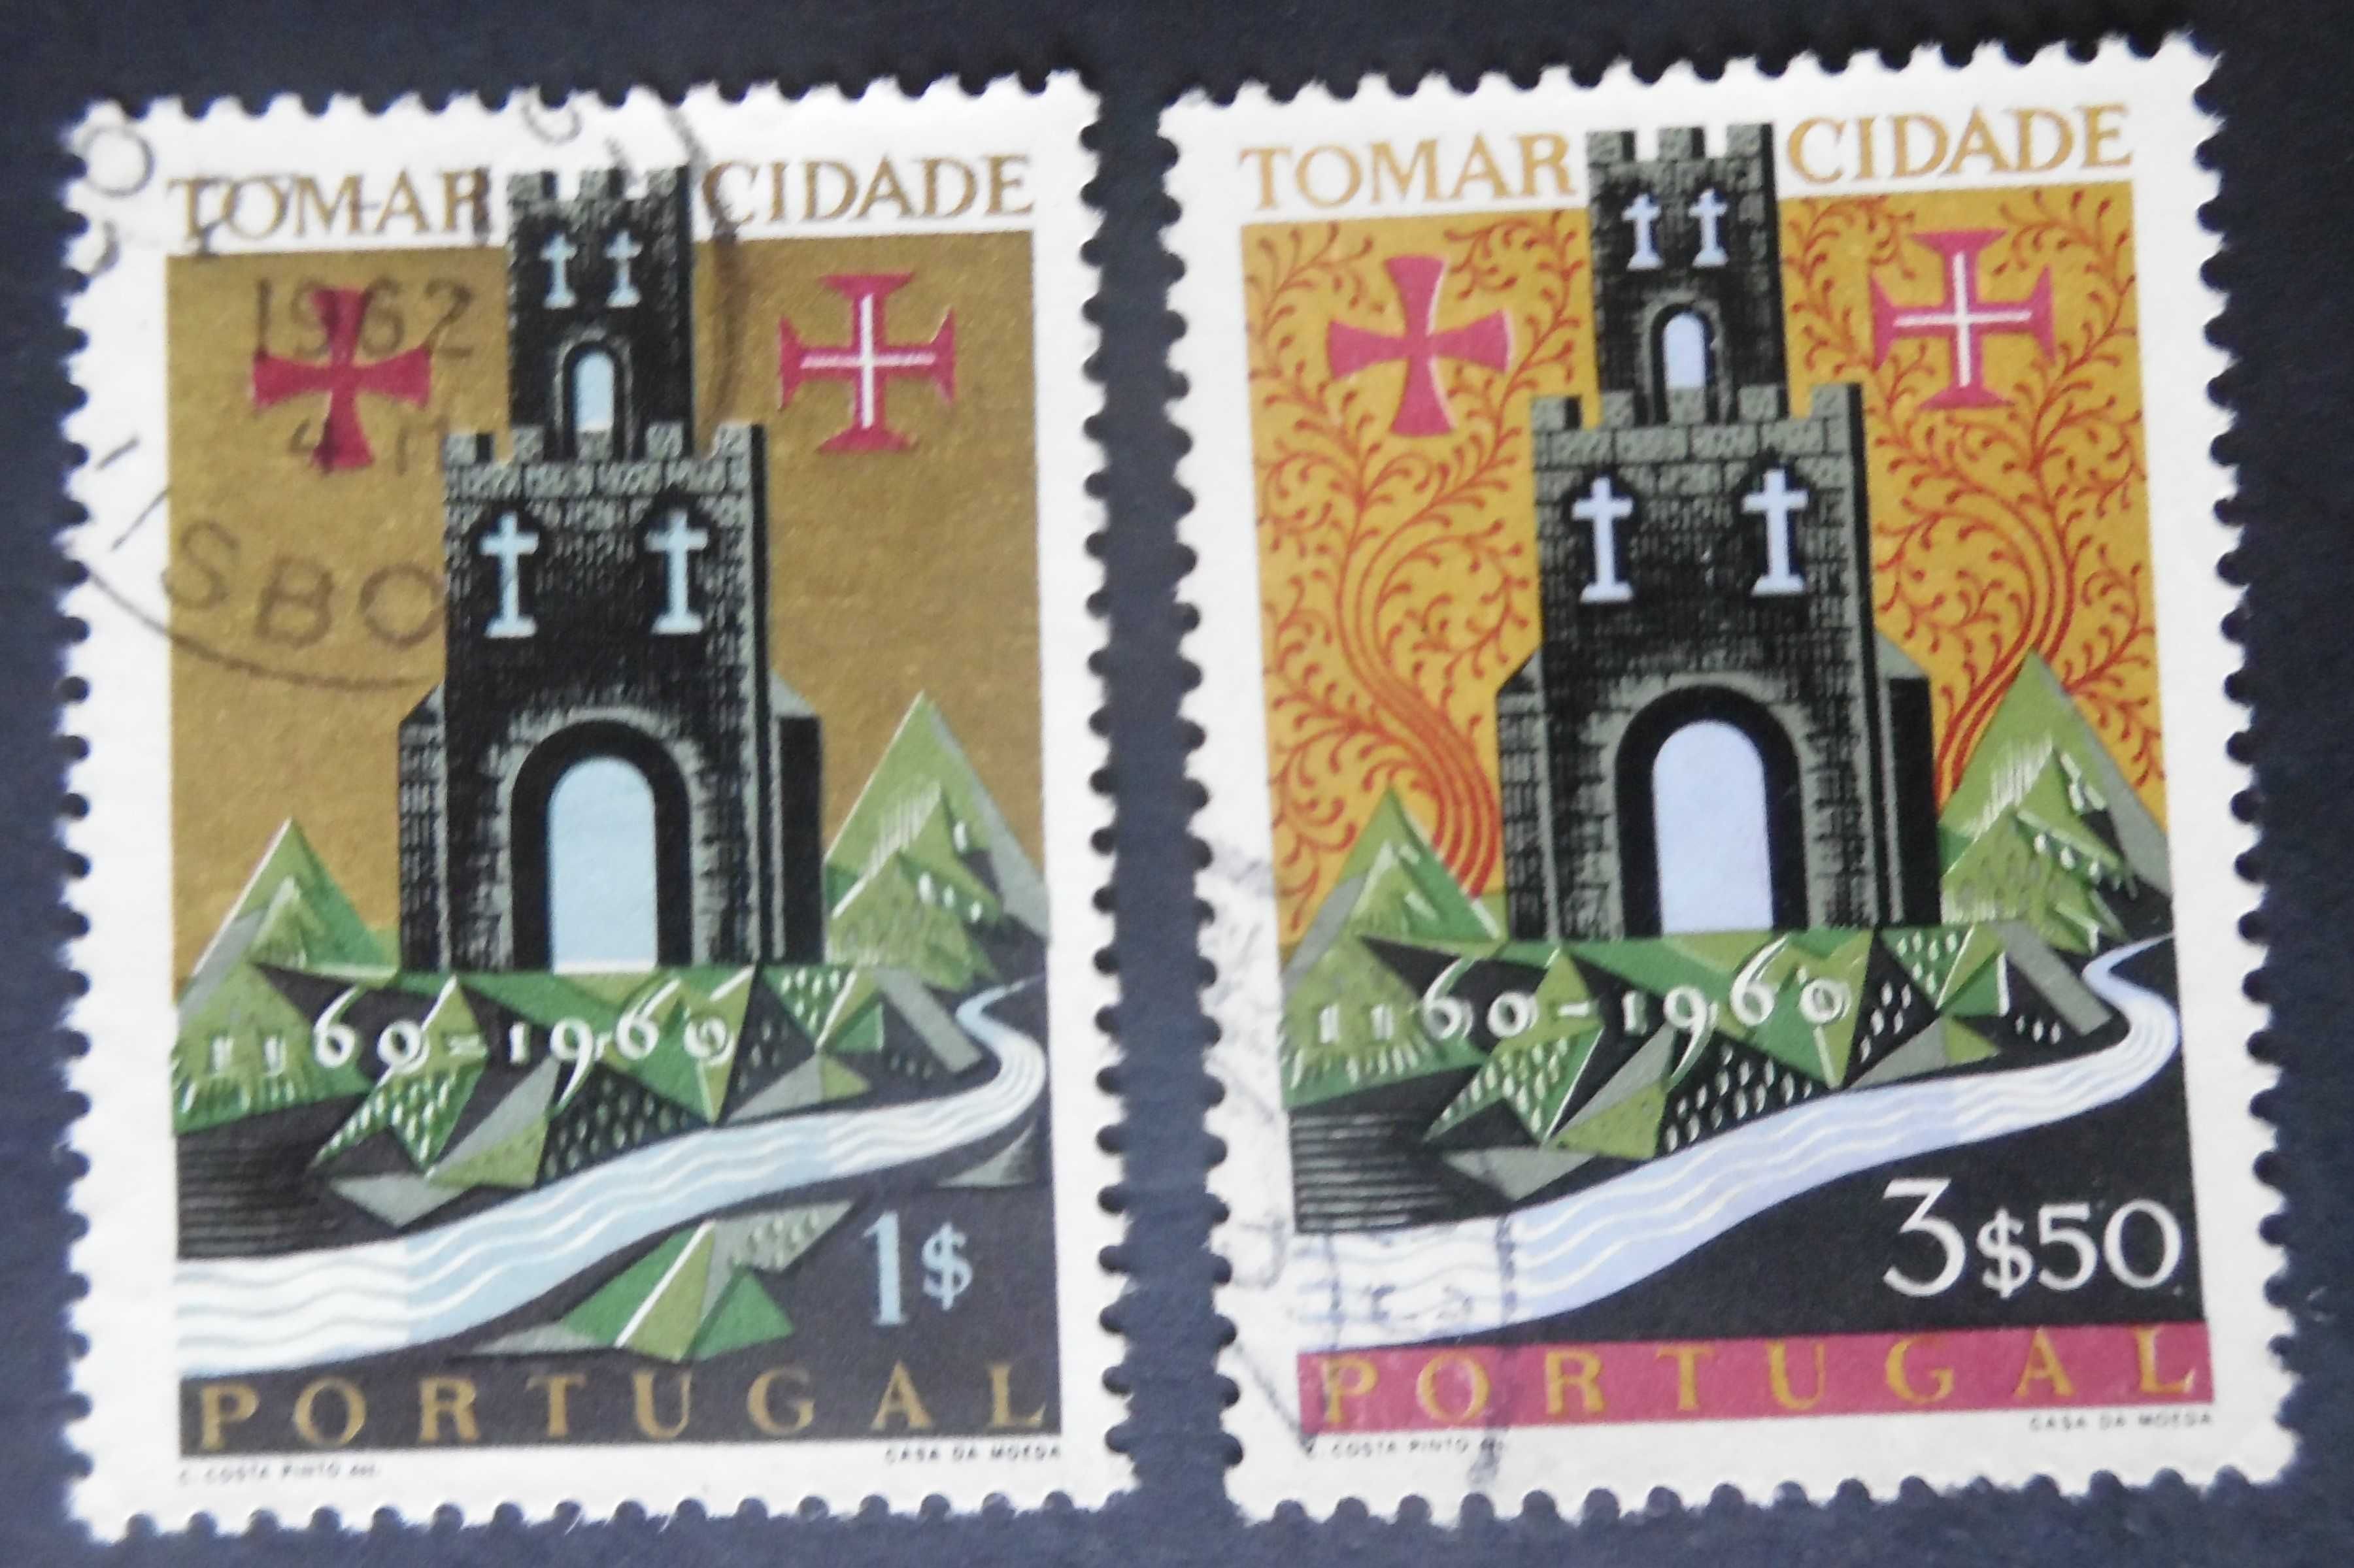 Selos Portugal 1962-Cidade de Tomar série completa